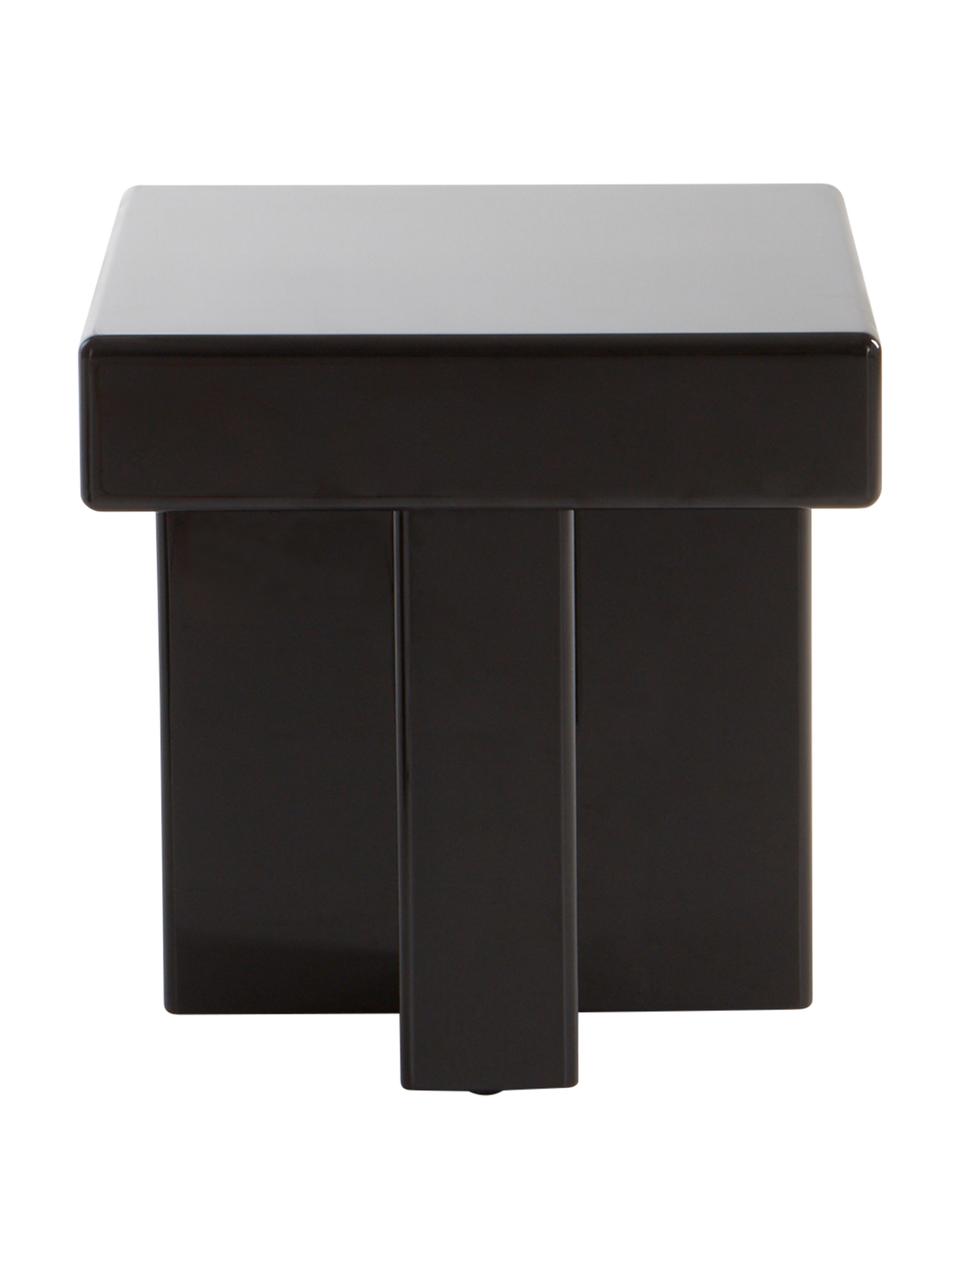 Odkládací stolek Crozz, Lakovaná MDF deska (dřevovláknitá deska střední hustoty), Dřevo, lakováno černou barvou, Š 35 cm, V 43 cm